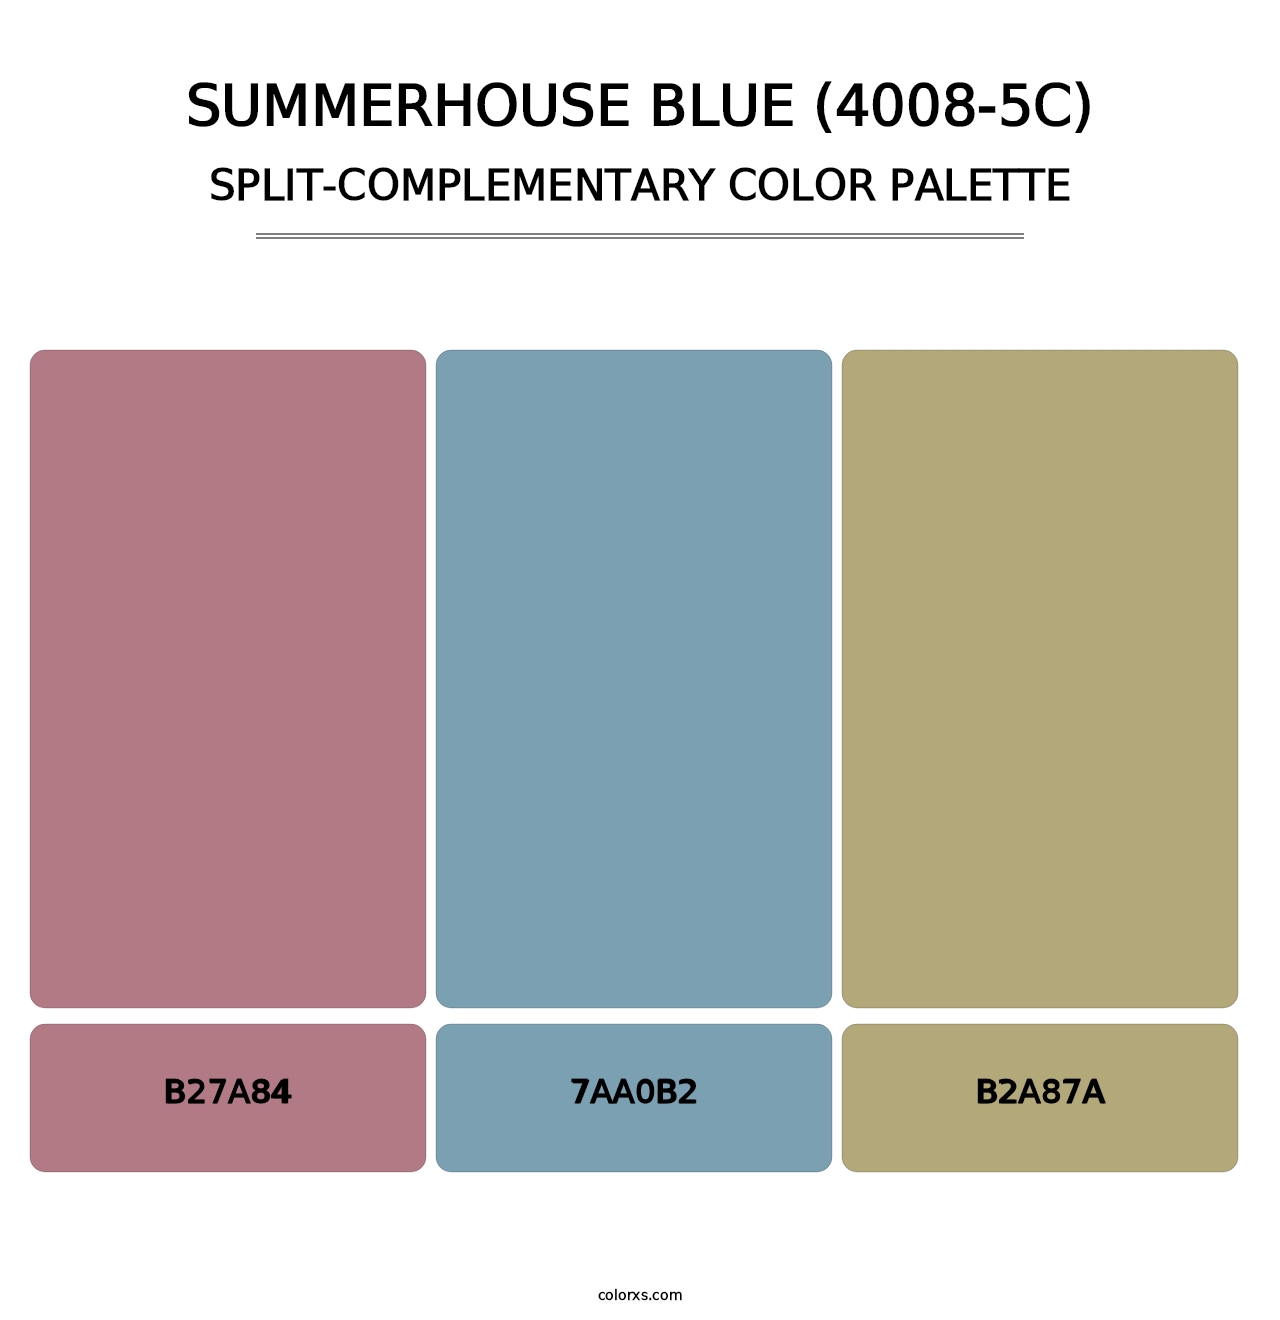 Summerhouse Blue (4008-5C) - Split-Complementary Color Palette